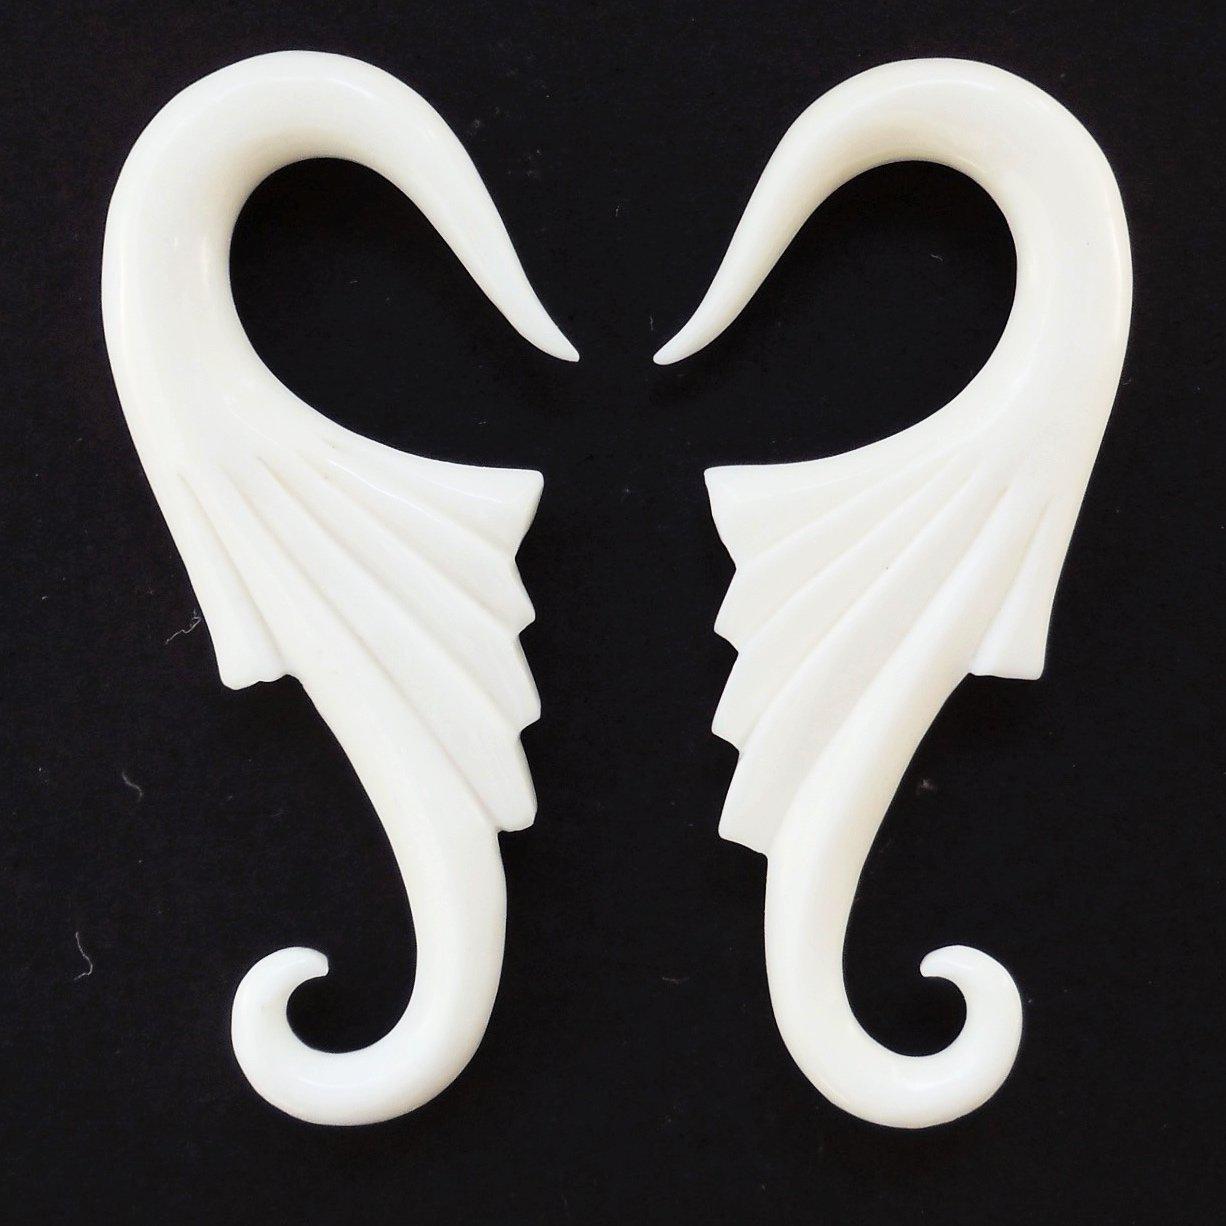 Gauge Earrings :|: Nouveau Wings. Bone 4g, Organic Body Jewelry. | Piercing Jewelry